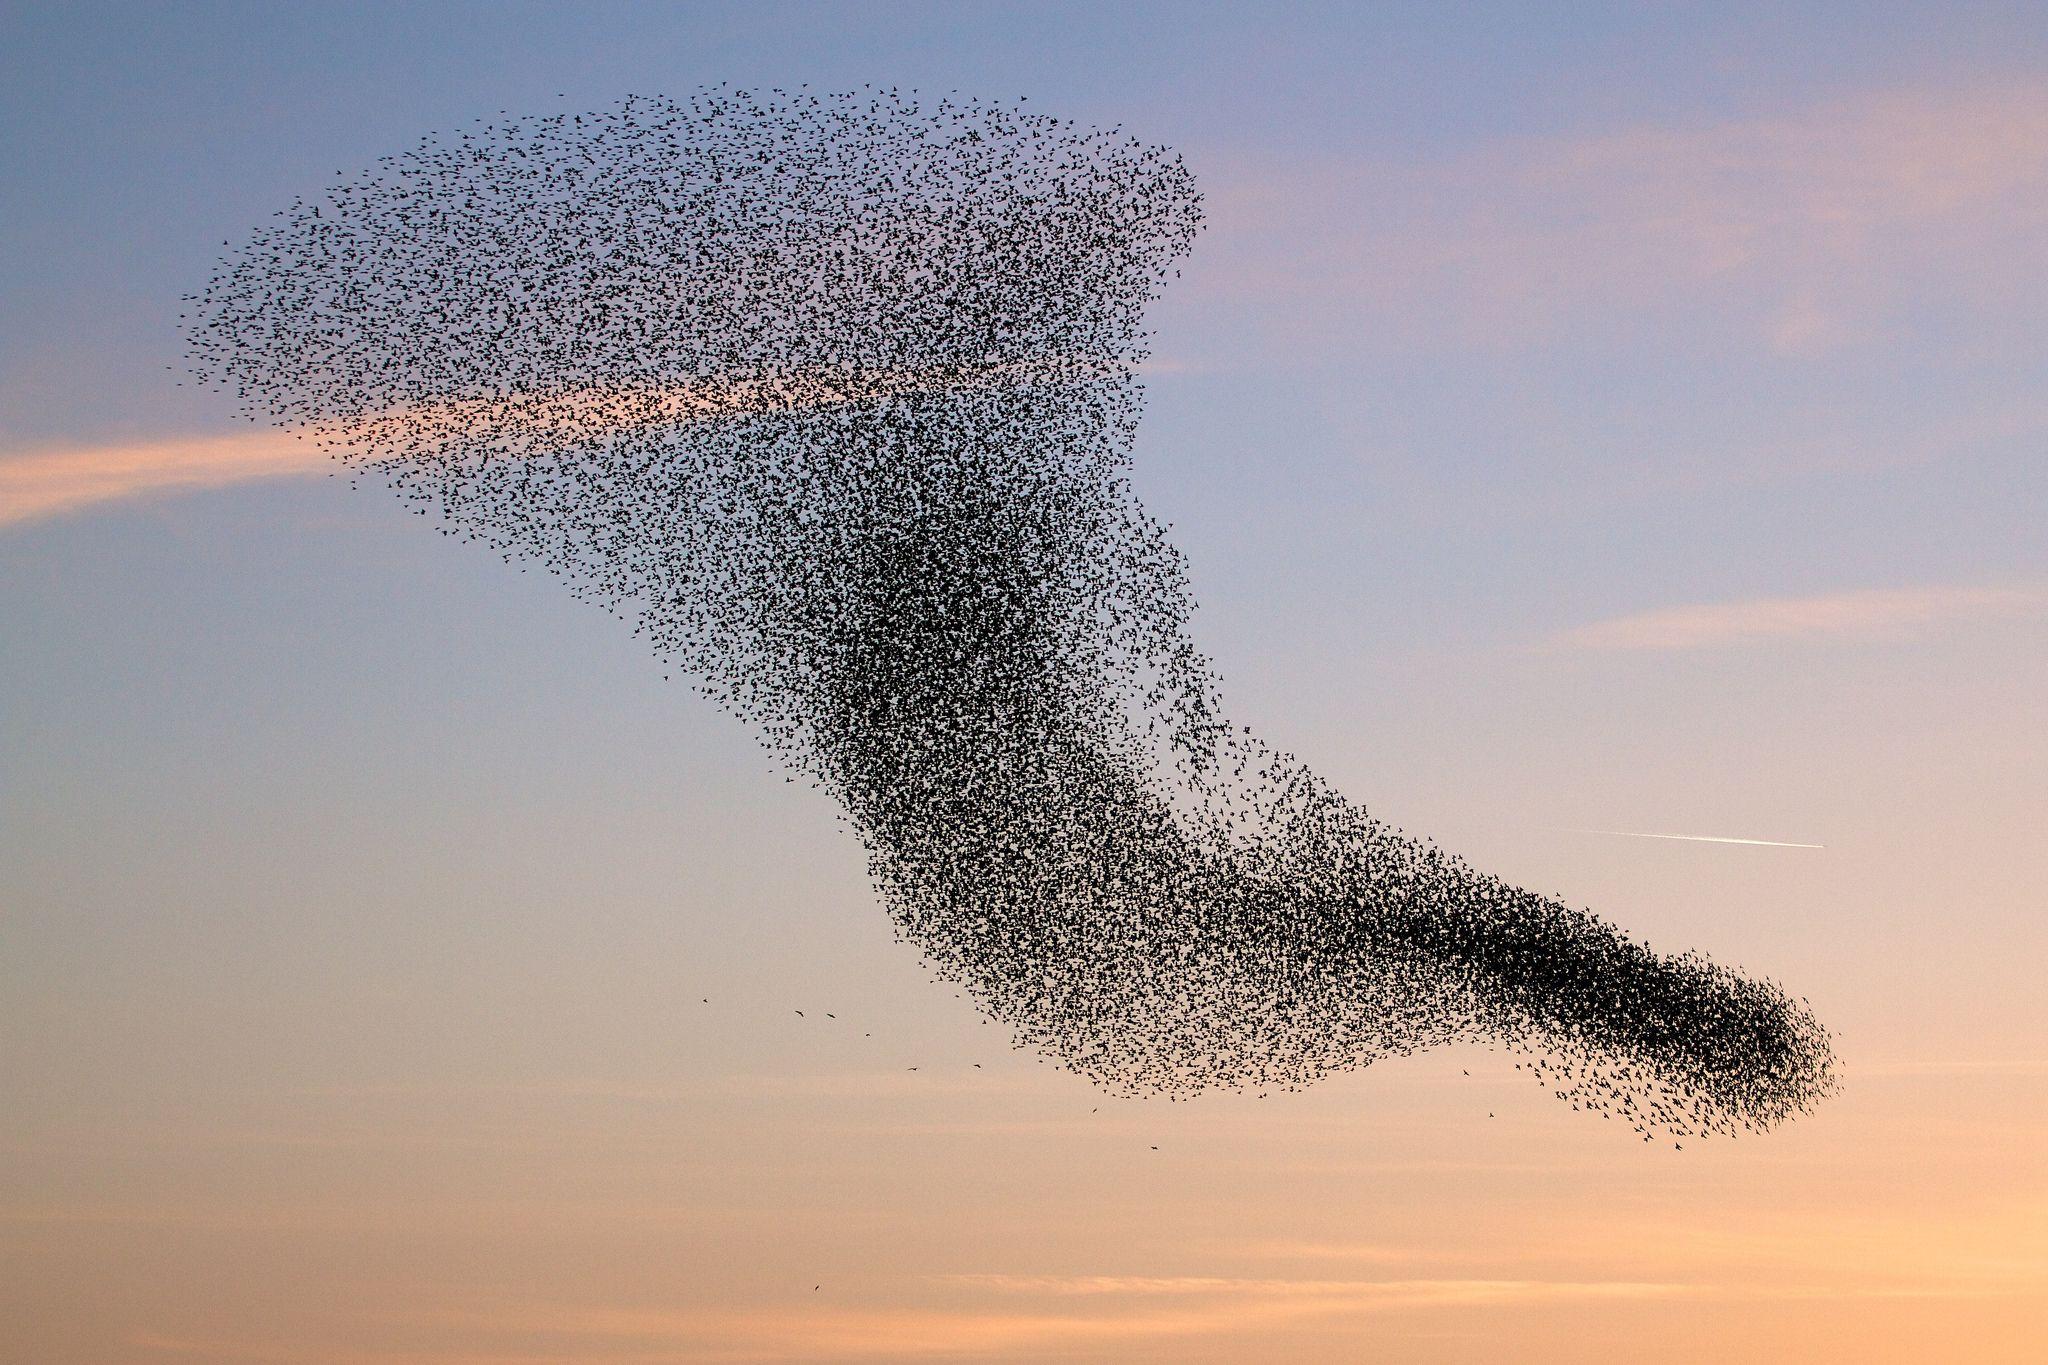 Birds, flock, swarm, vortex